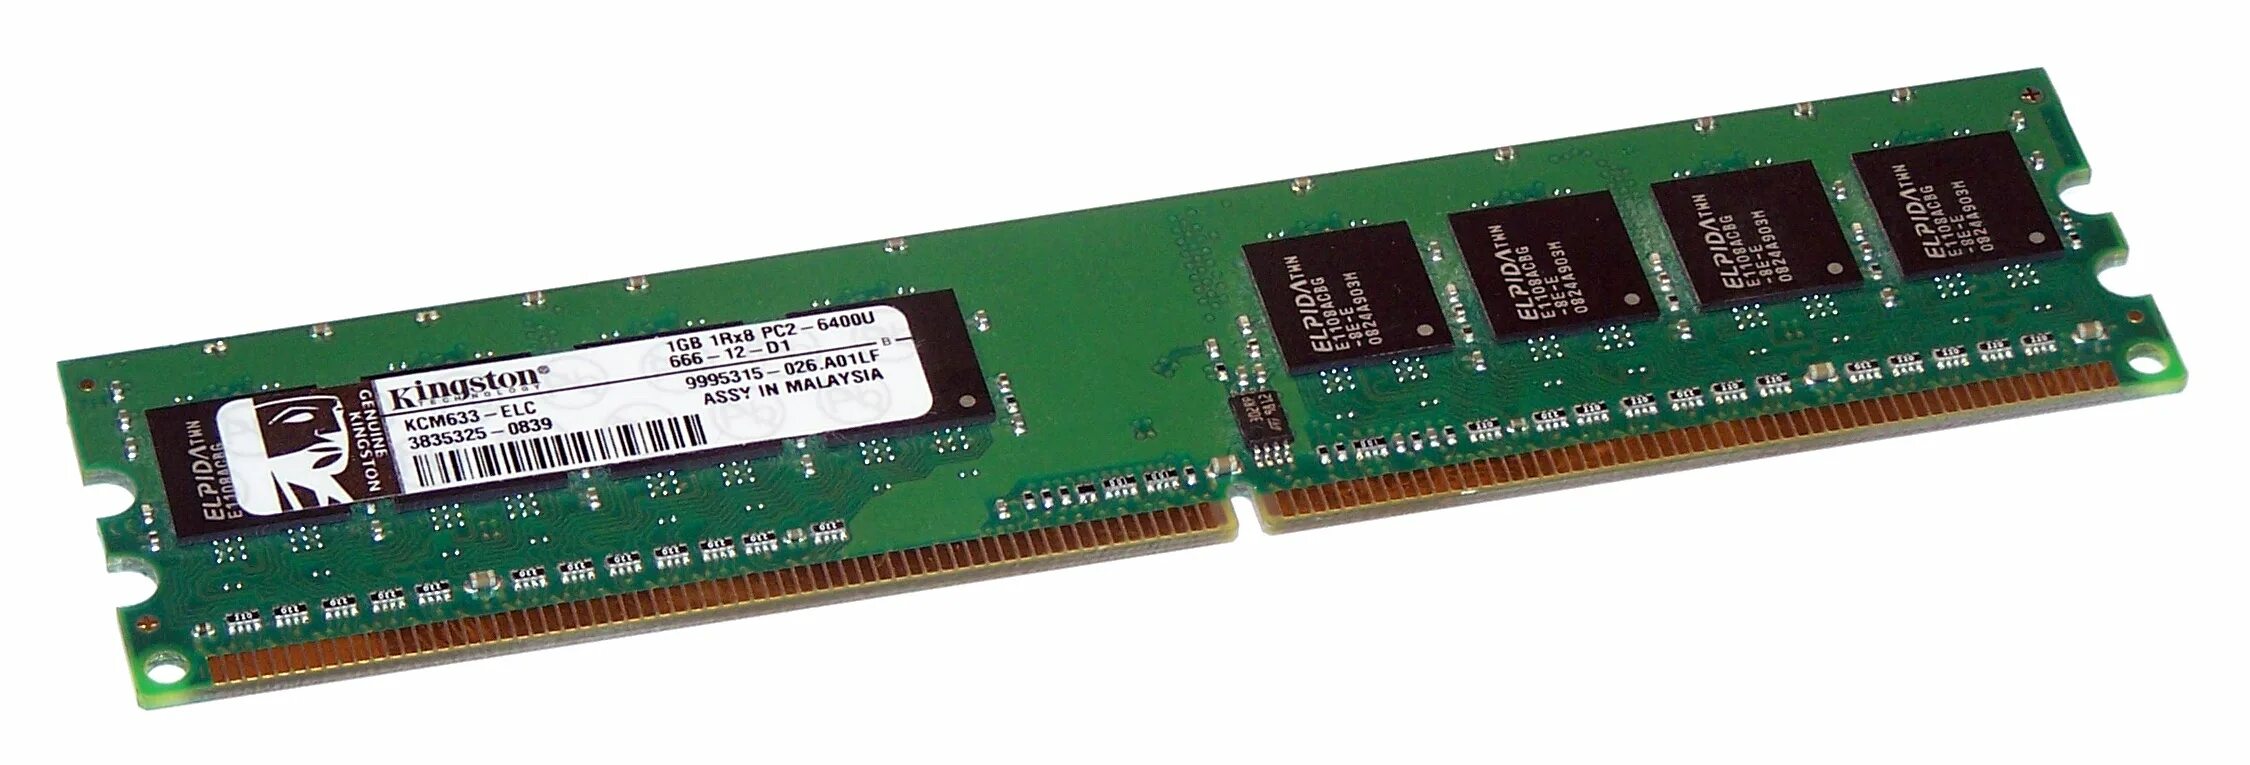 Оперативная память Kingston kvr800d2n6/2g ddr2 2 ГБ 800 МГЦ. Оперативная память Kingston 2гб ддр 2. Hynix ddr2 2gb 800mhz. Kingston 4 ГБ ddr2 800 МГЦ DIMM cl6 kvr800d2n6/4g.